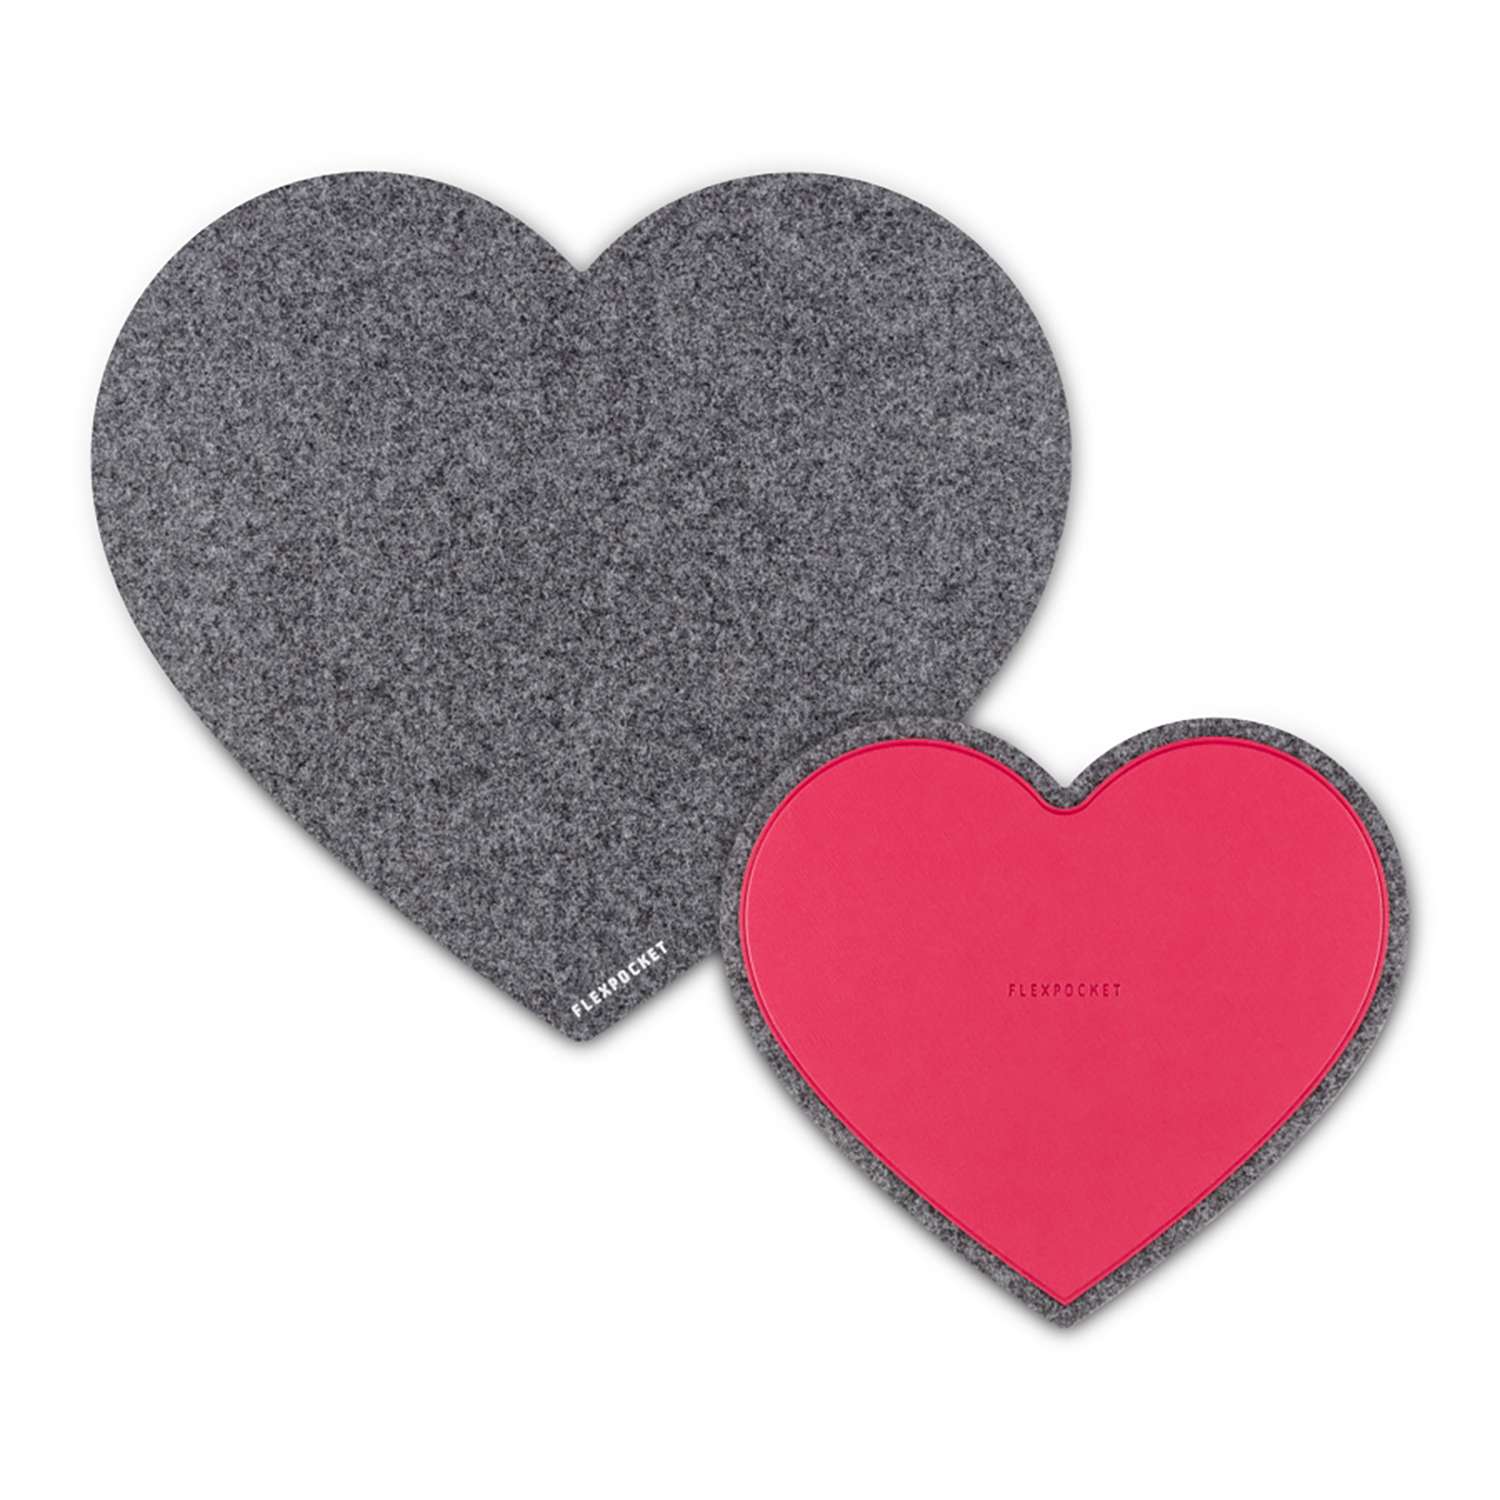 Настольный коврик Flexpocket для мыши в виде сердца с подставкой под кружку темно-серый 2 шт в комплекте - фото 1